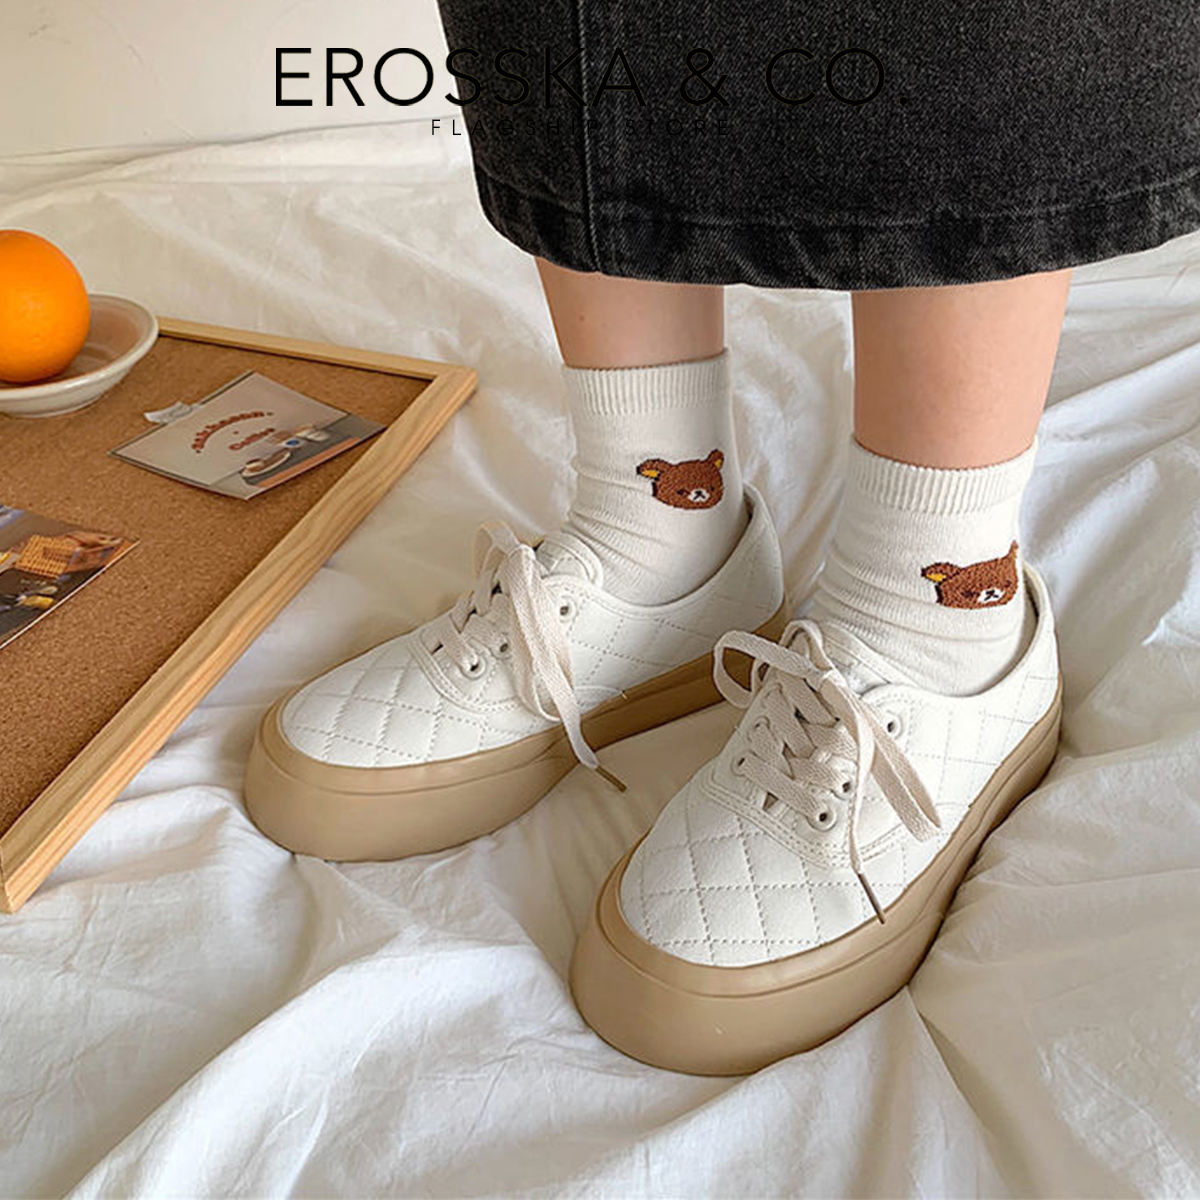 Erosska - Giày sneaker đế dày phối kem đi học phong cách vintage - GS014